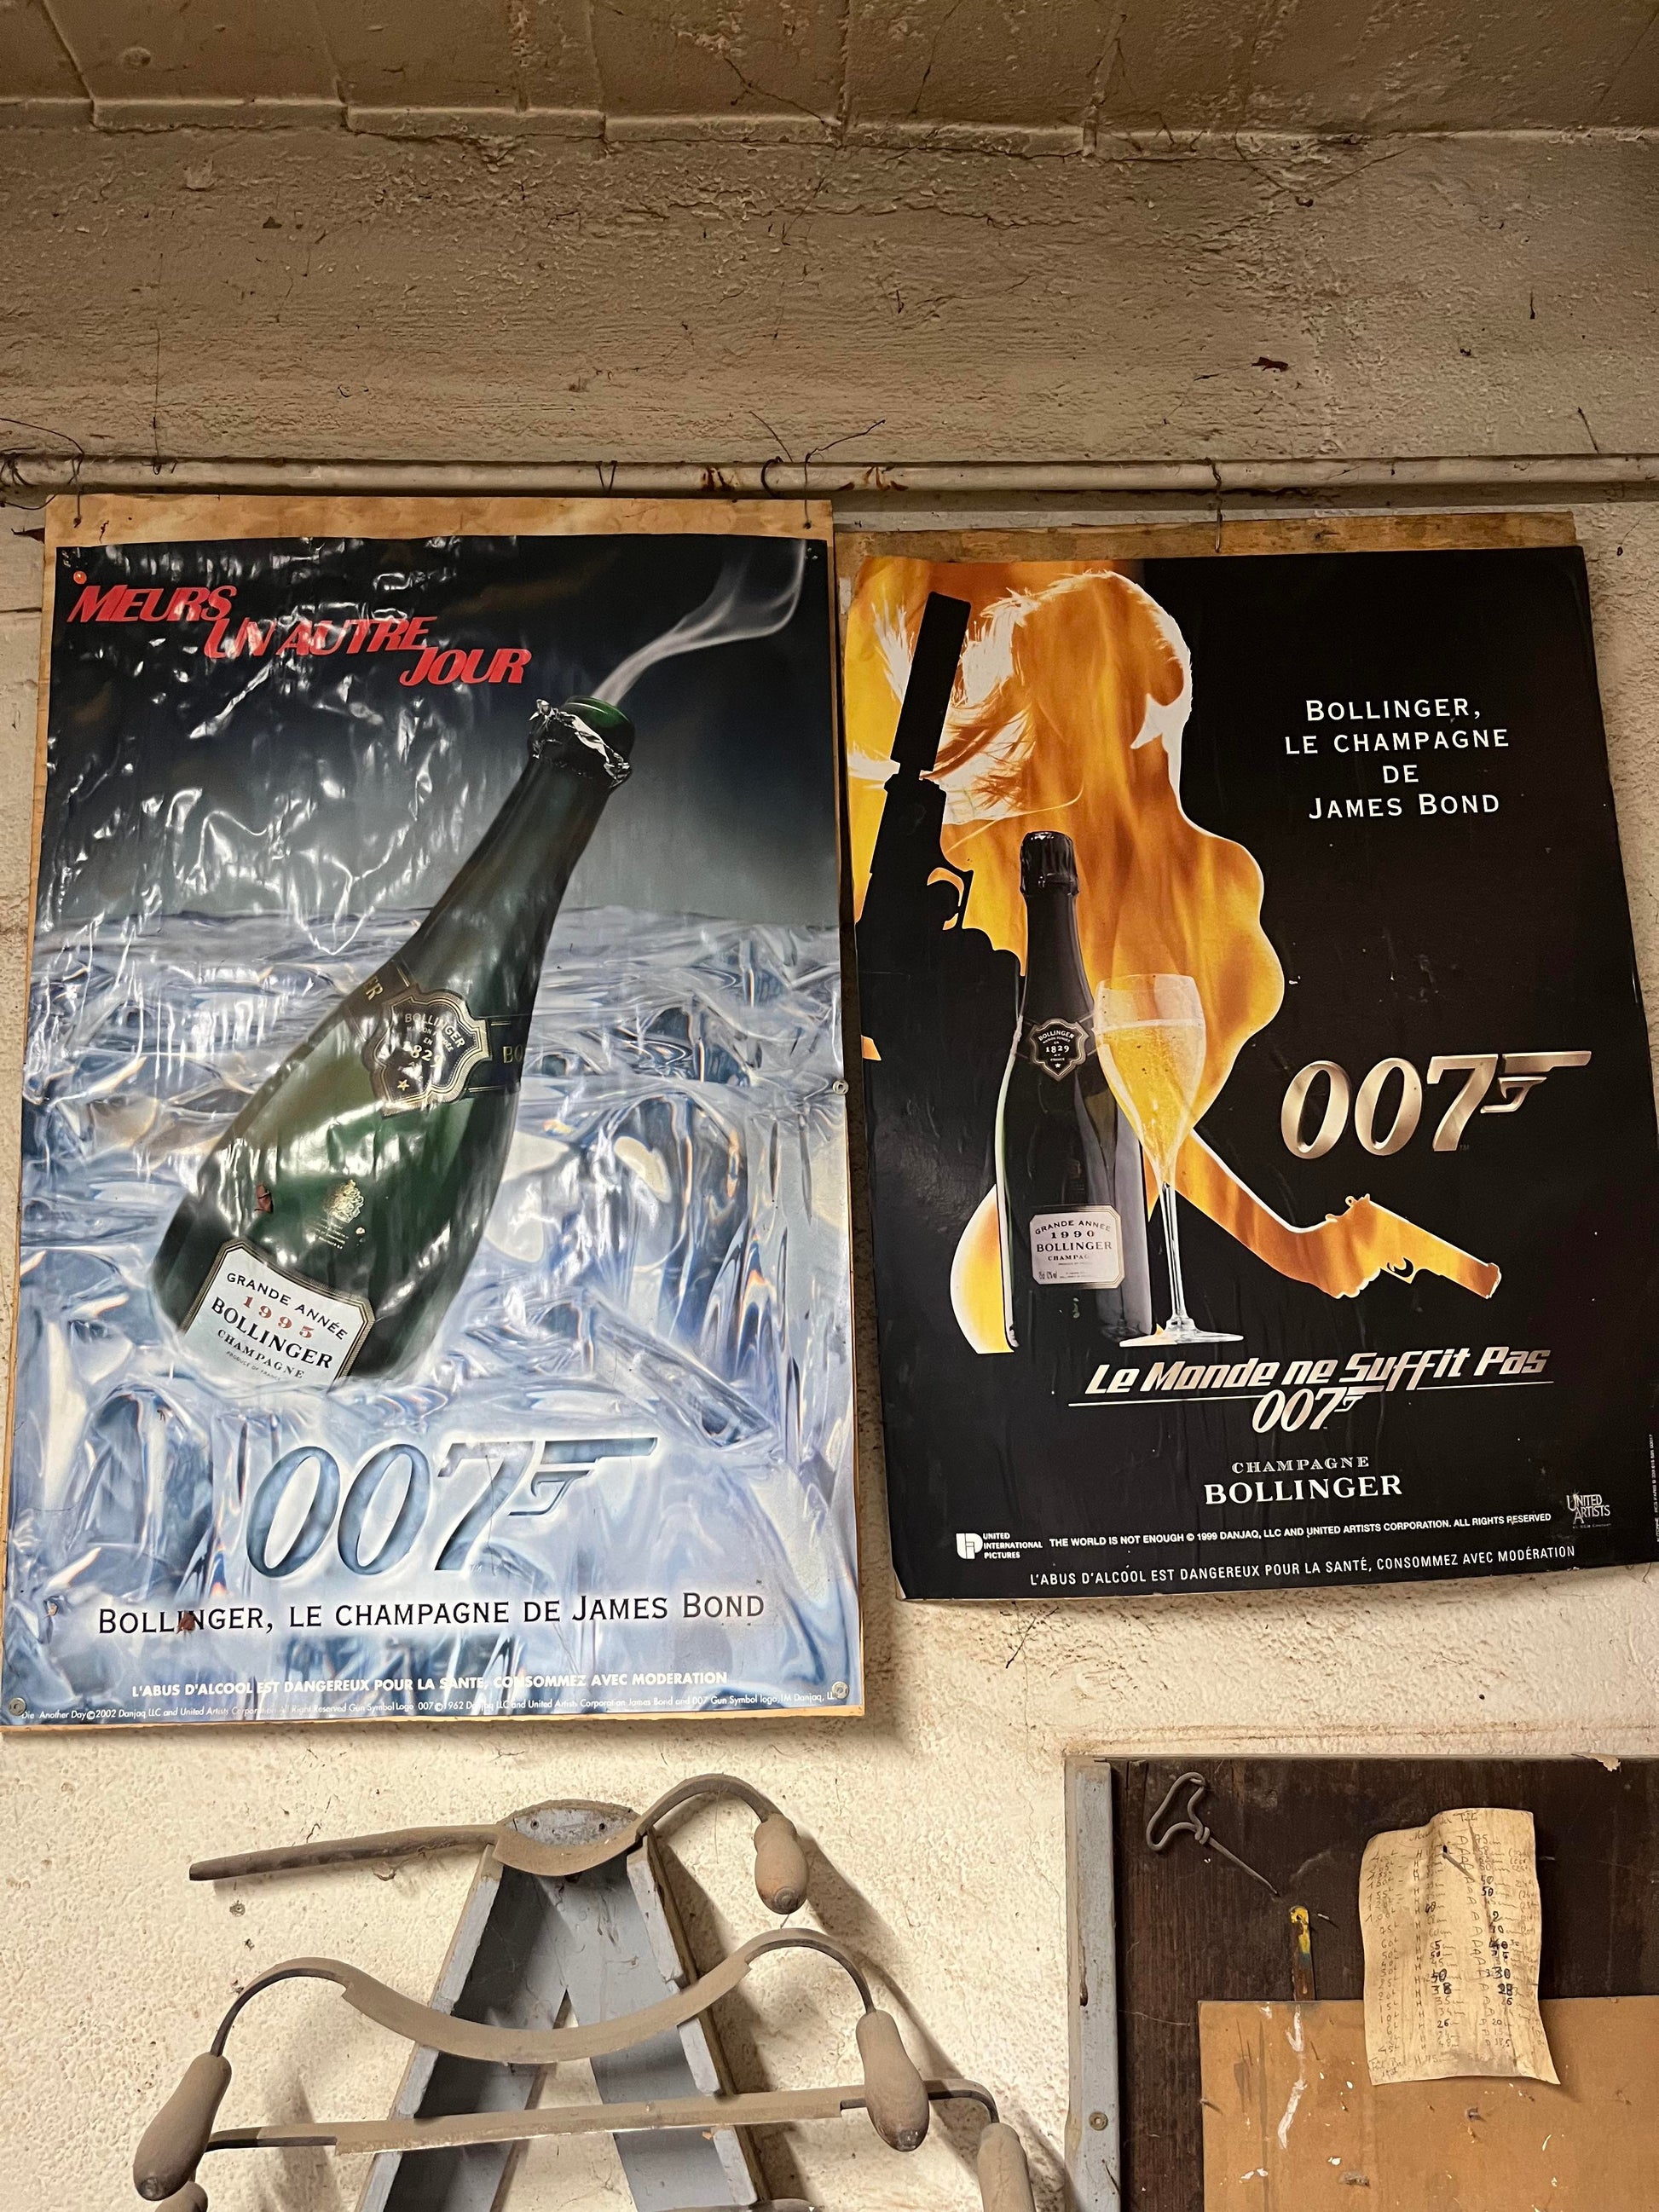 James Bond Champagne - Bollinger - 007 - Vintage posters